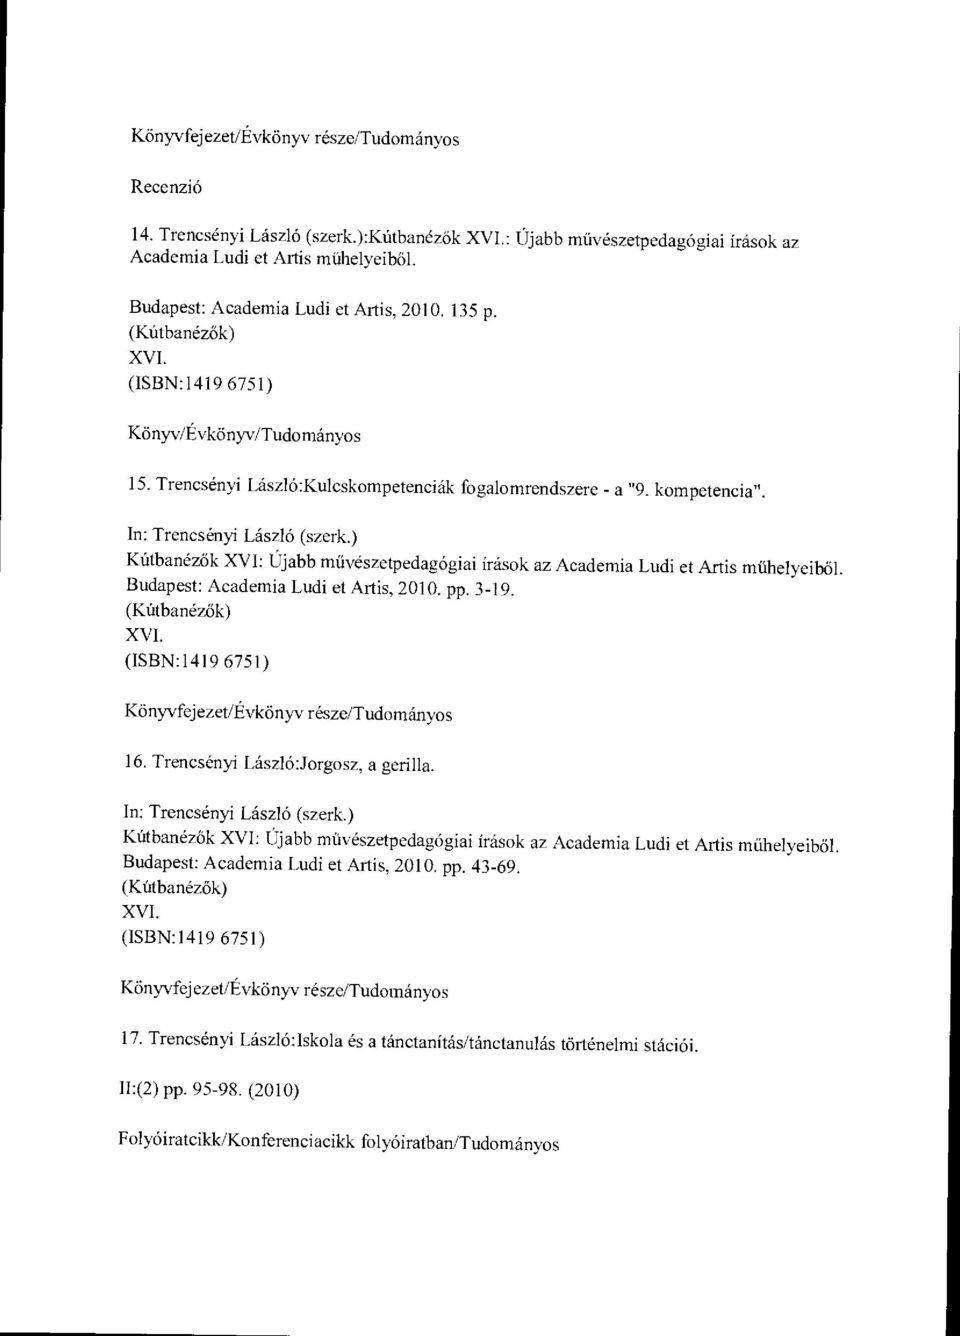 In: Trencsényi László (szerk.) Kútbanézők XVI: Újabb m űvészetpedagógiai írások az Academia Ludi et Artis m űhelyeib ől. Budapest: Academia Ludi et Artis, 2010. pp. 3-19. (Kútbanézők) XVI.